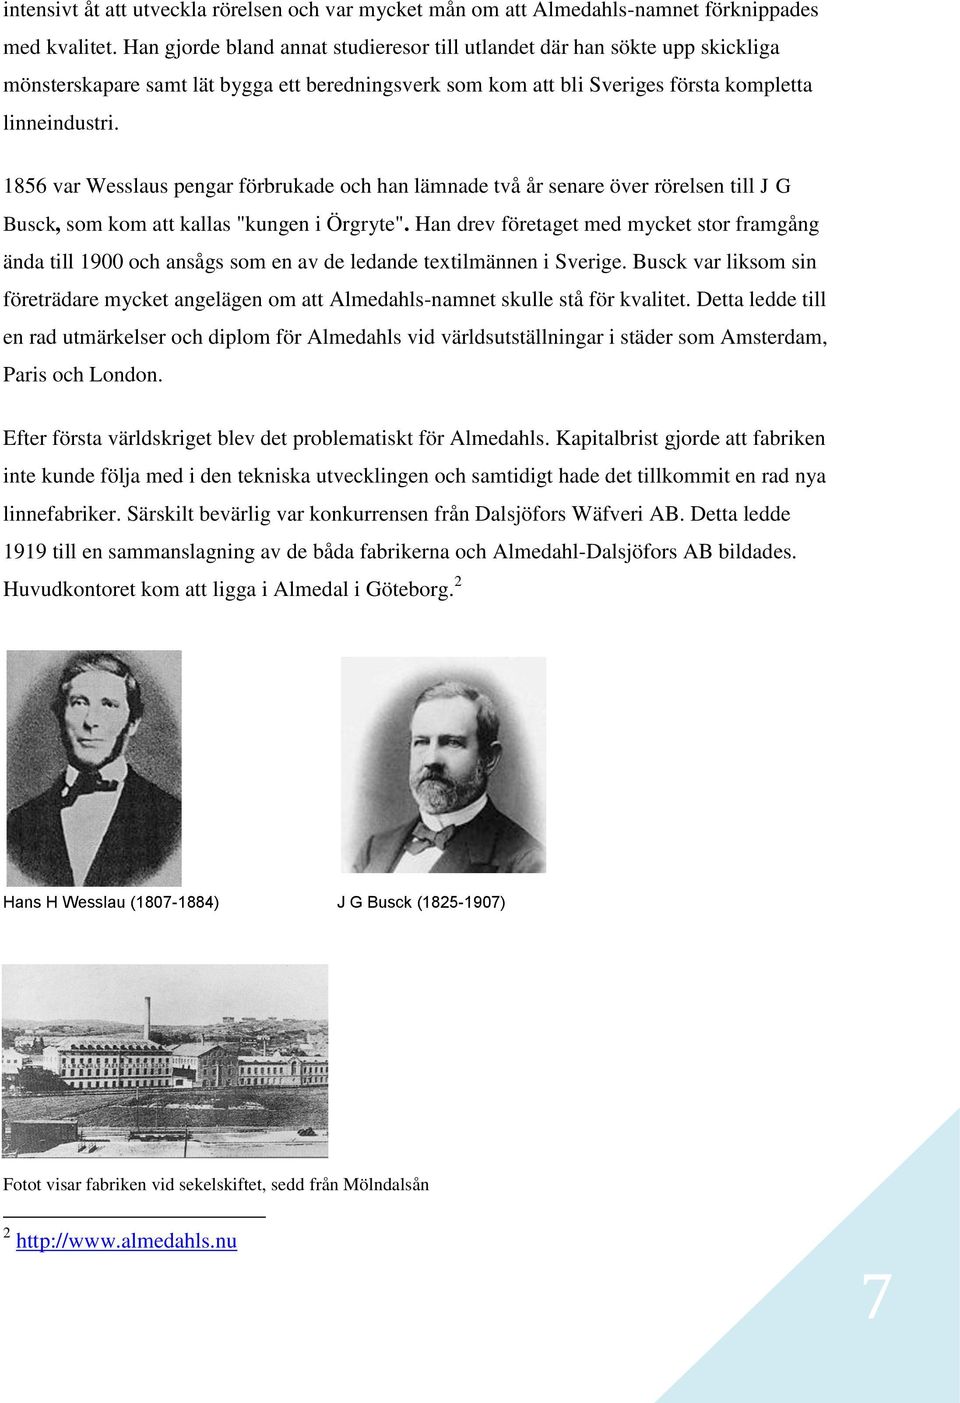 1856 var Wesslaus pengar förbrukade och han lämnade två år senare över rörelsen till J G Busck, som kom att kallas "kungen i Örgryte".